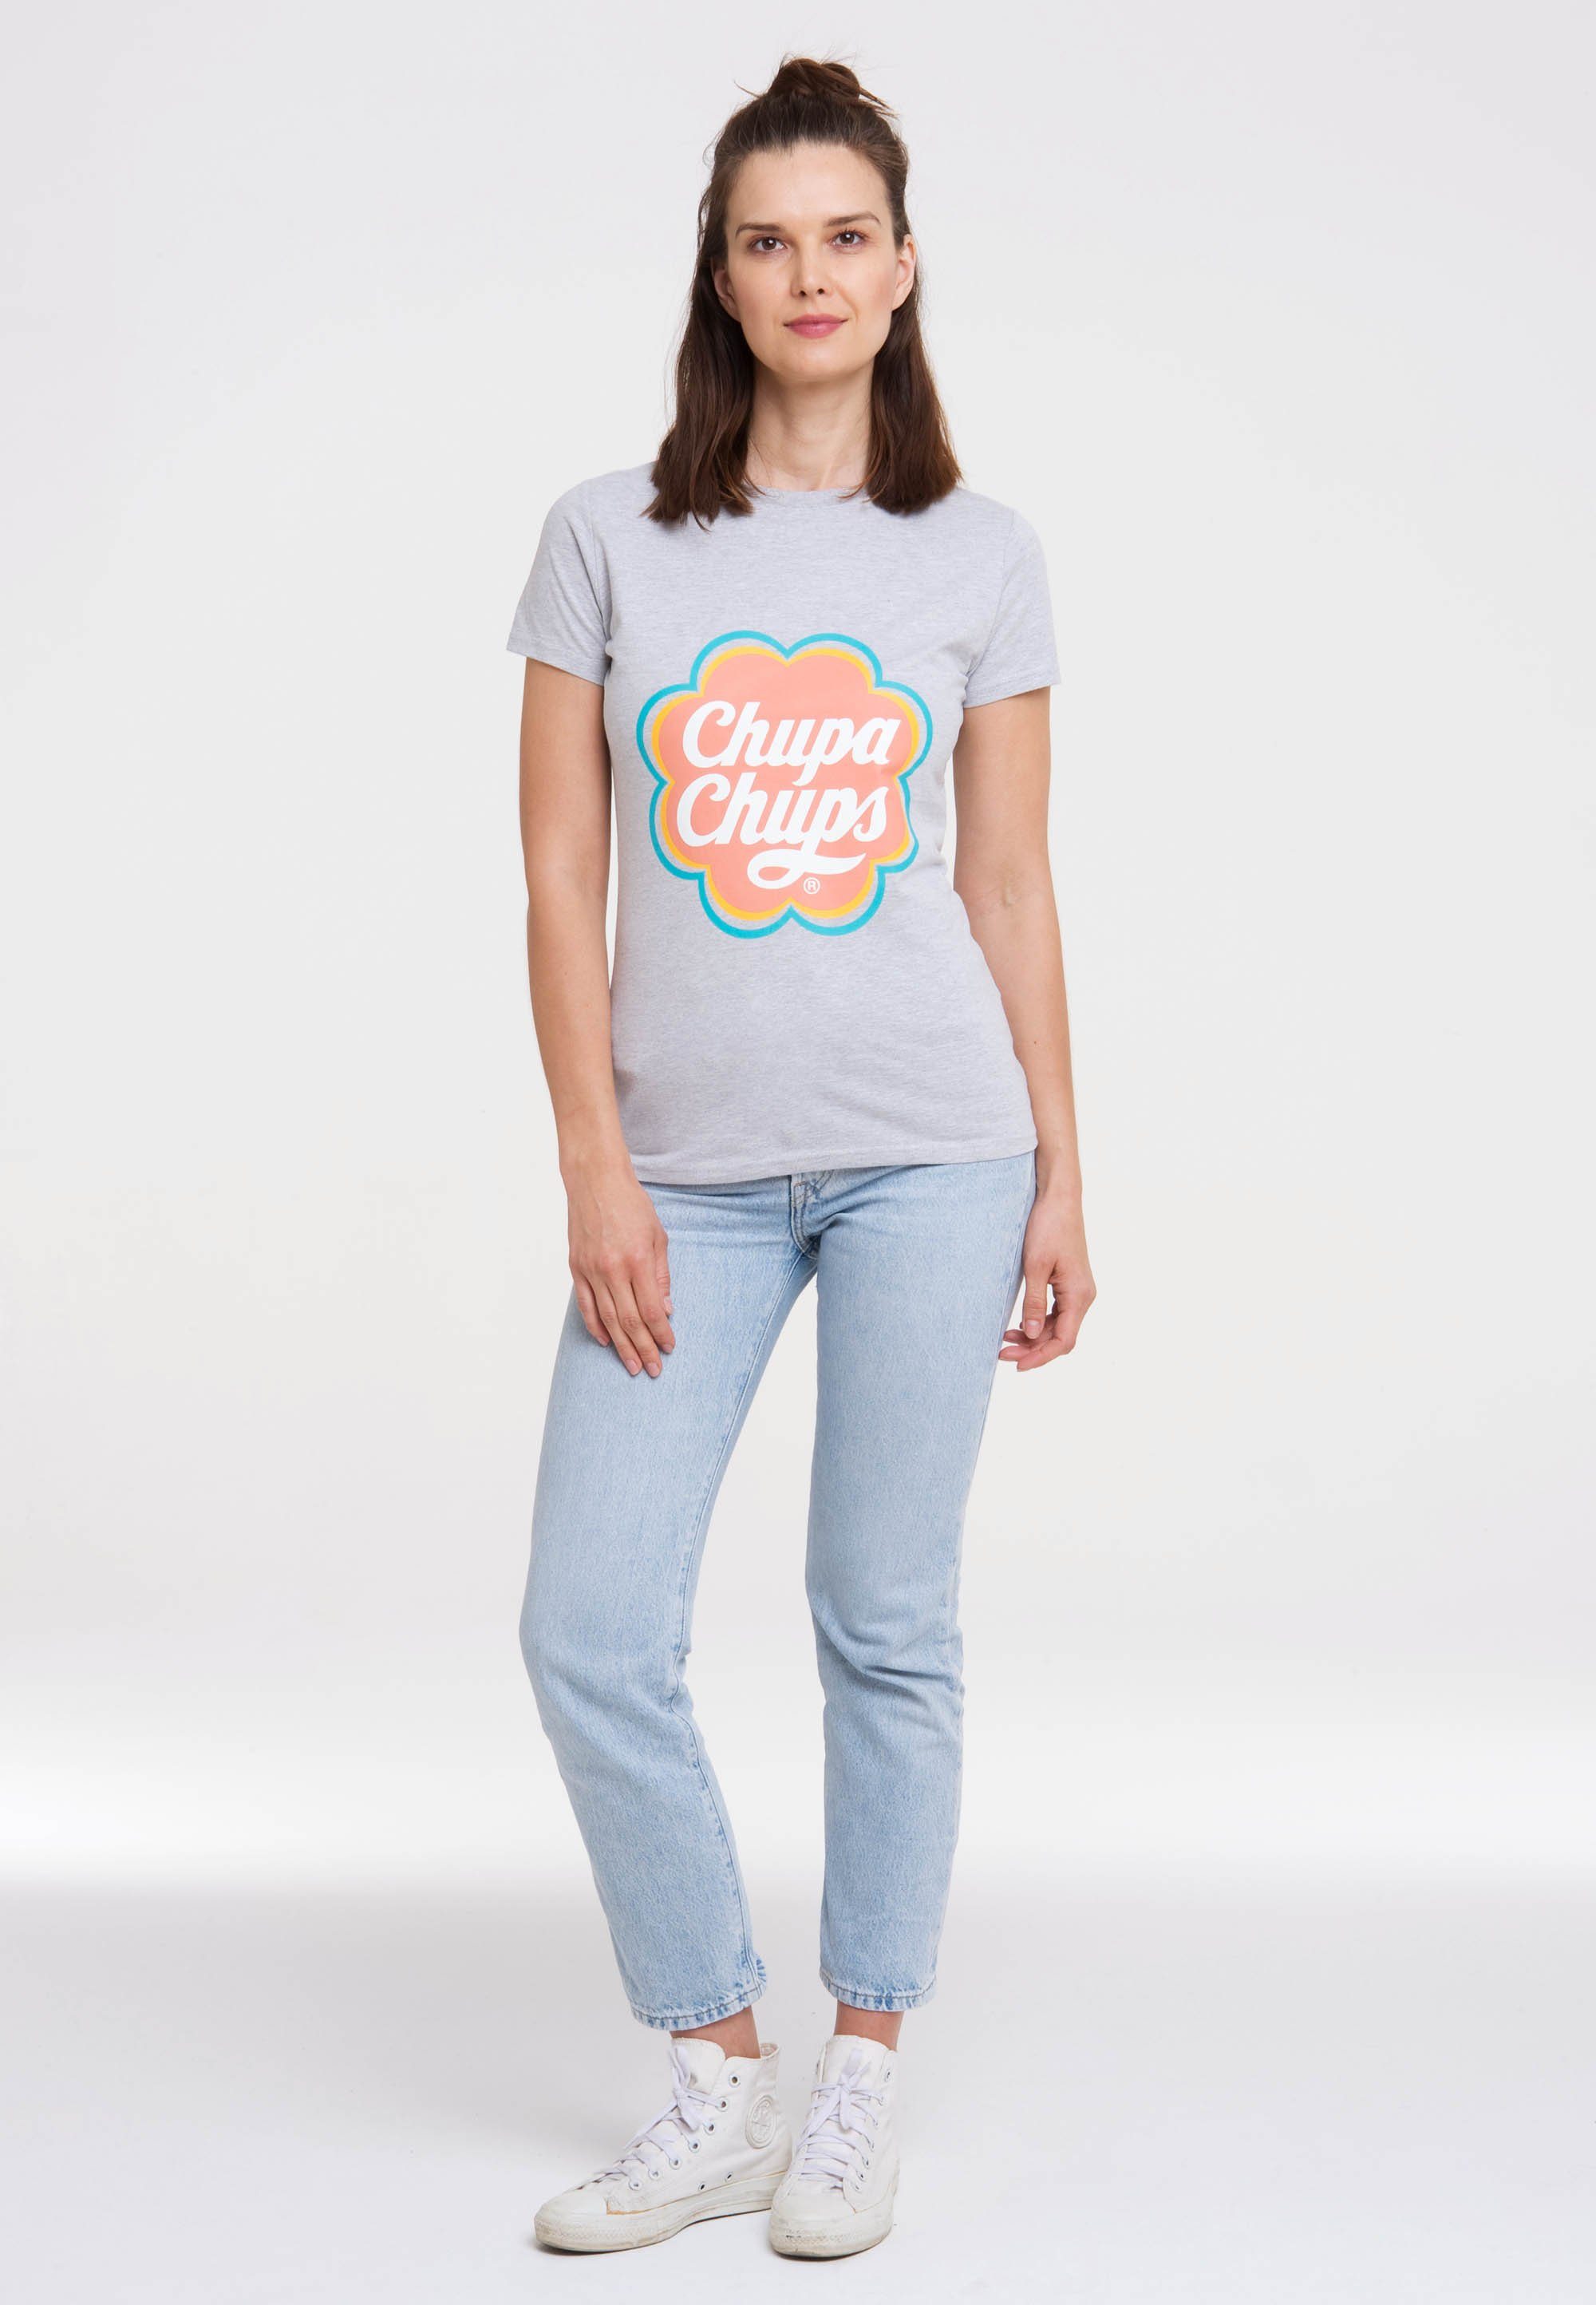 lizenzierten mit Design LOGOSHIRT Chups T-Shirt Chupa